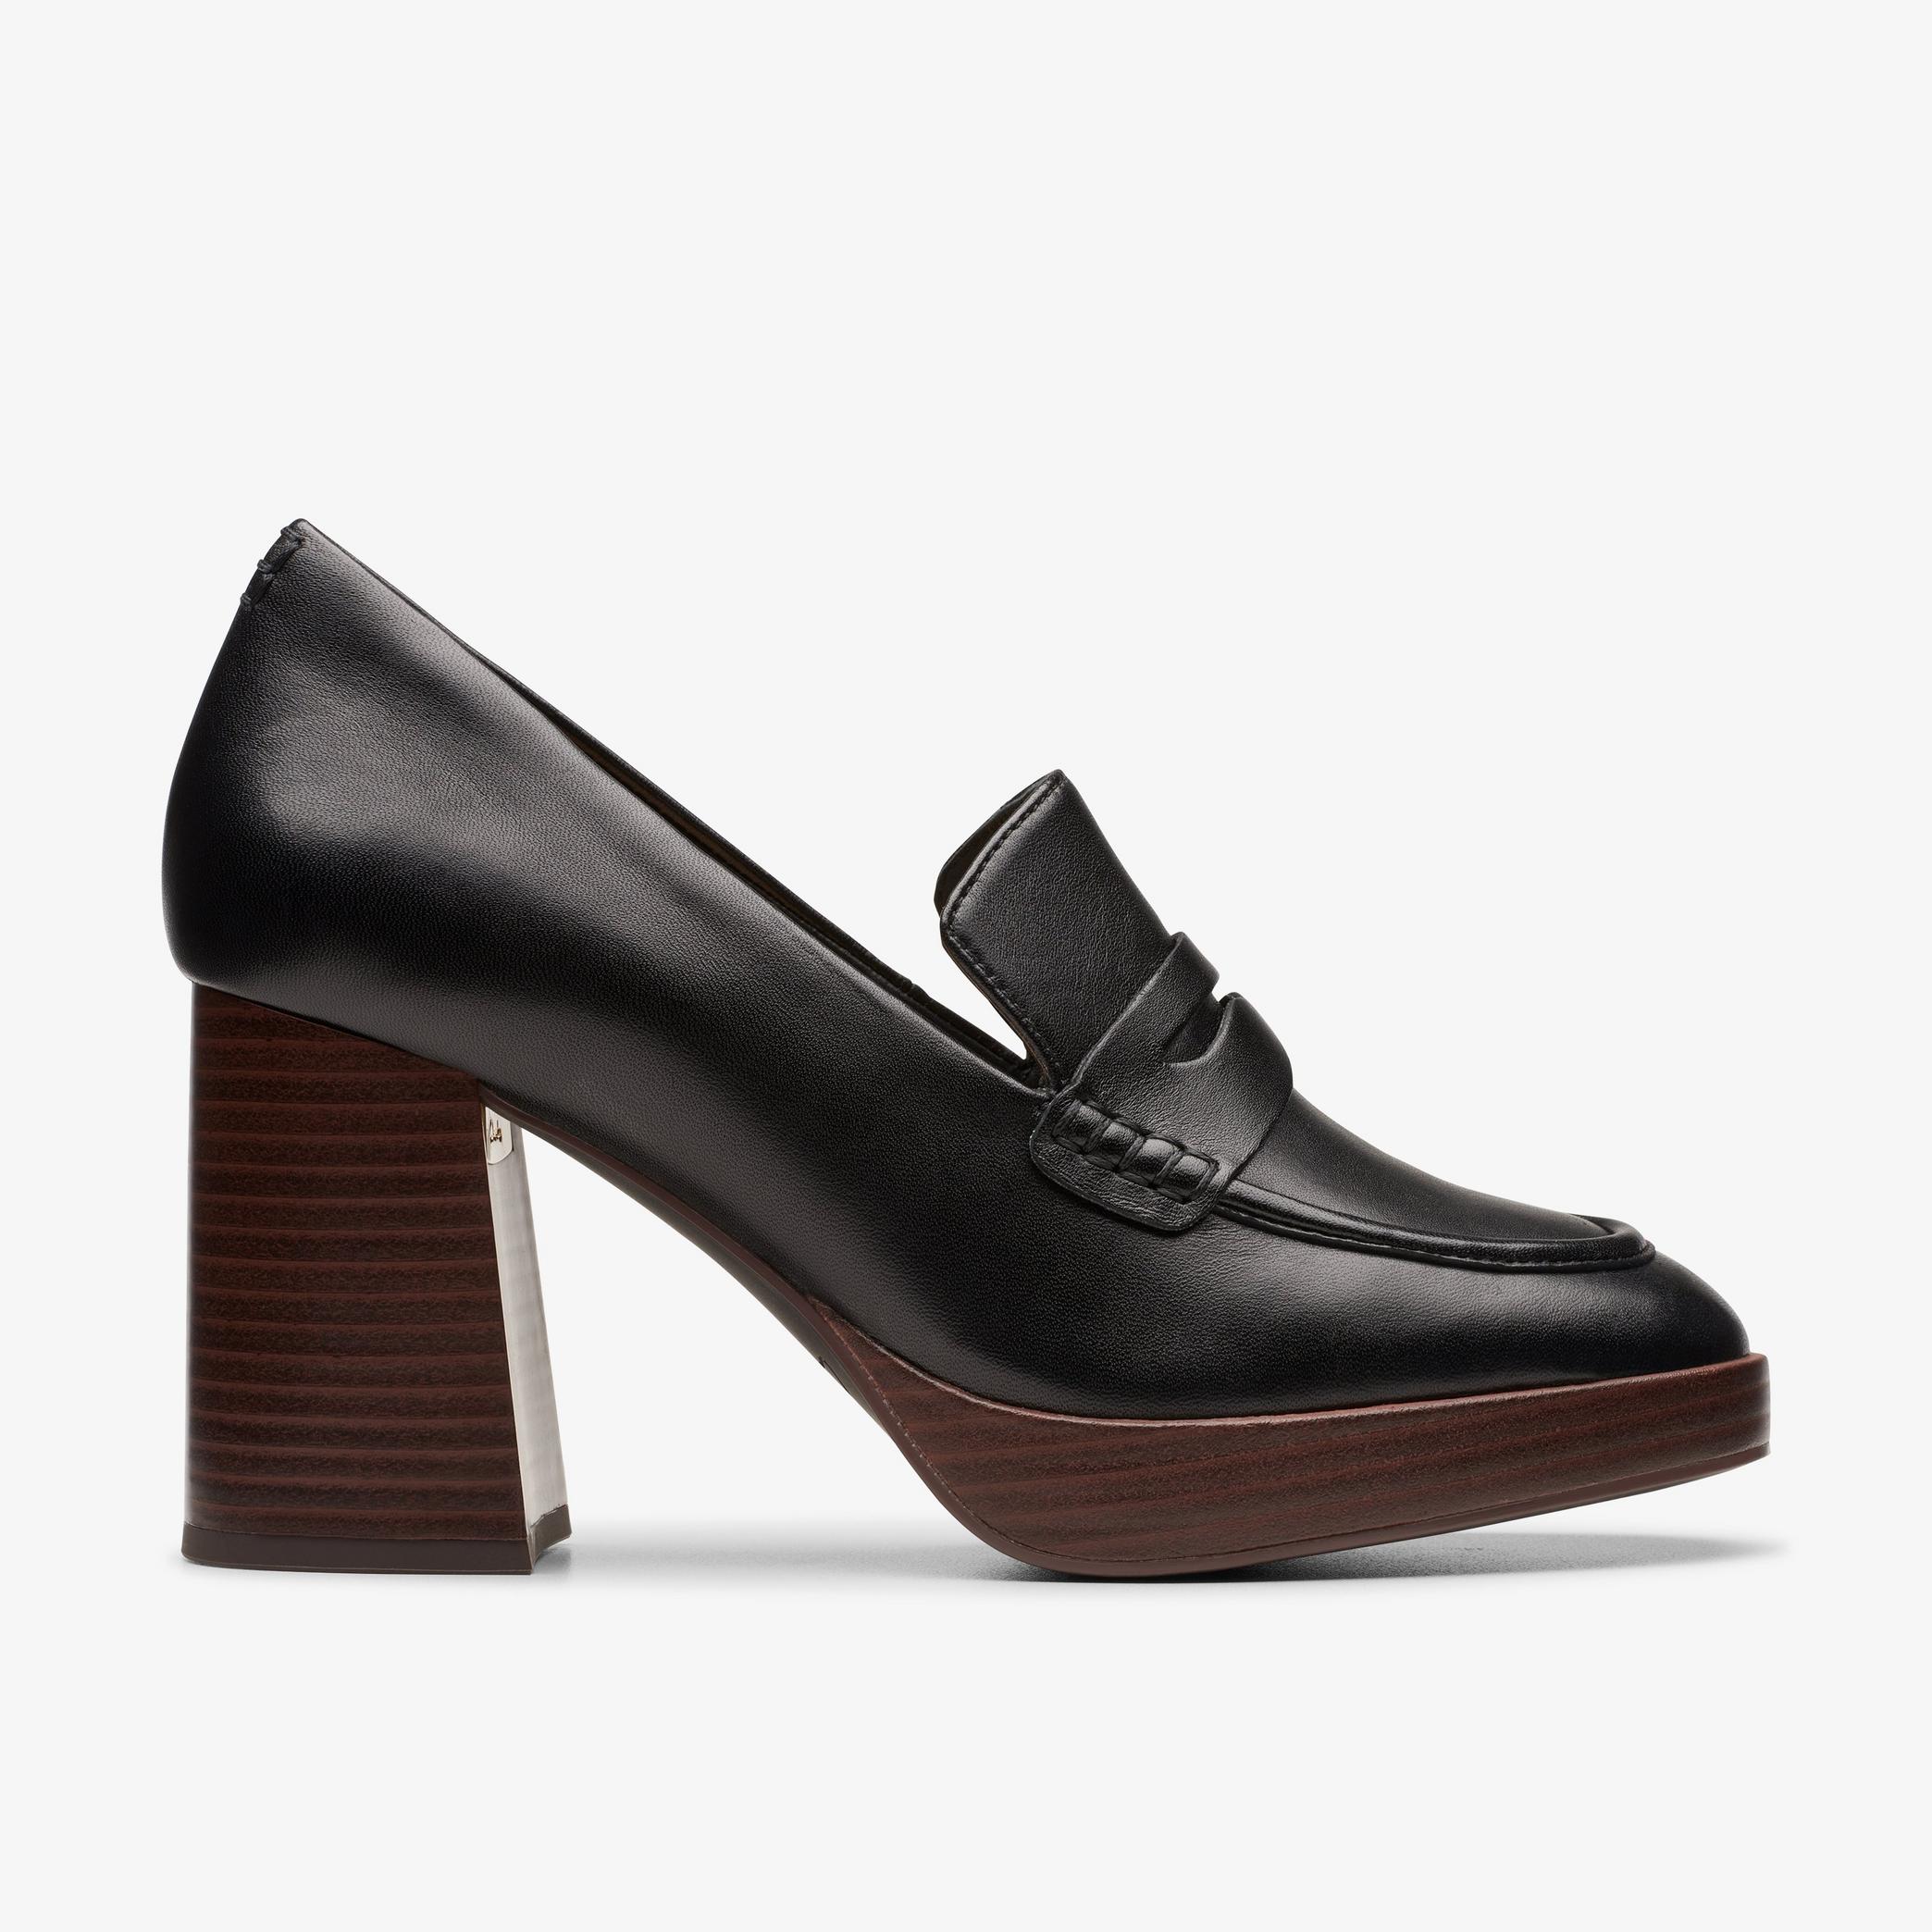 Chaussures à talons hauts en cuir noir Zoya85 Walk, vue 1 de 6